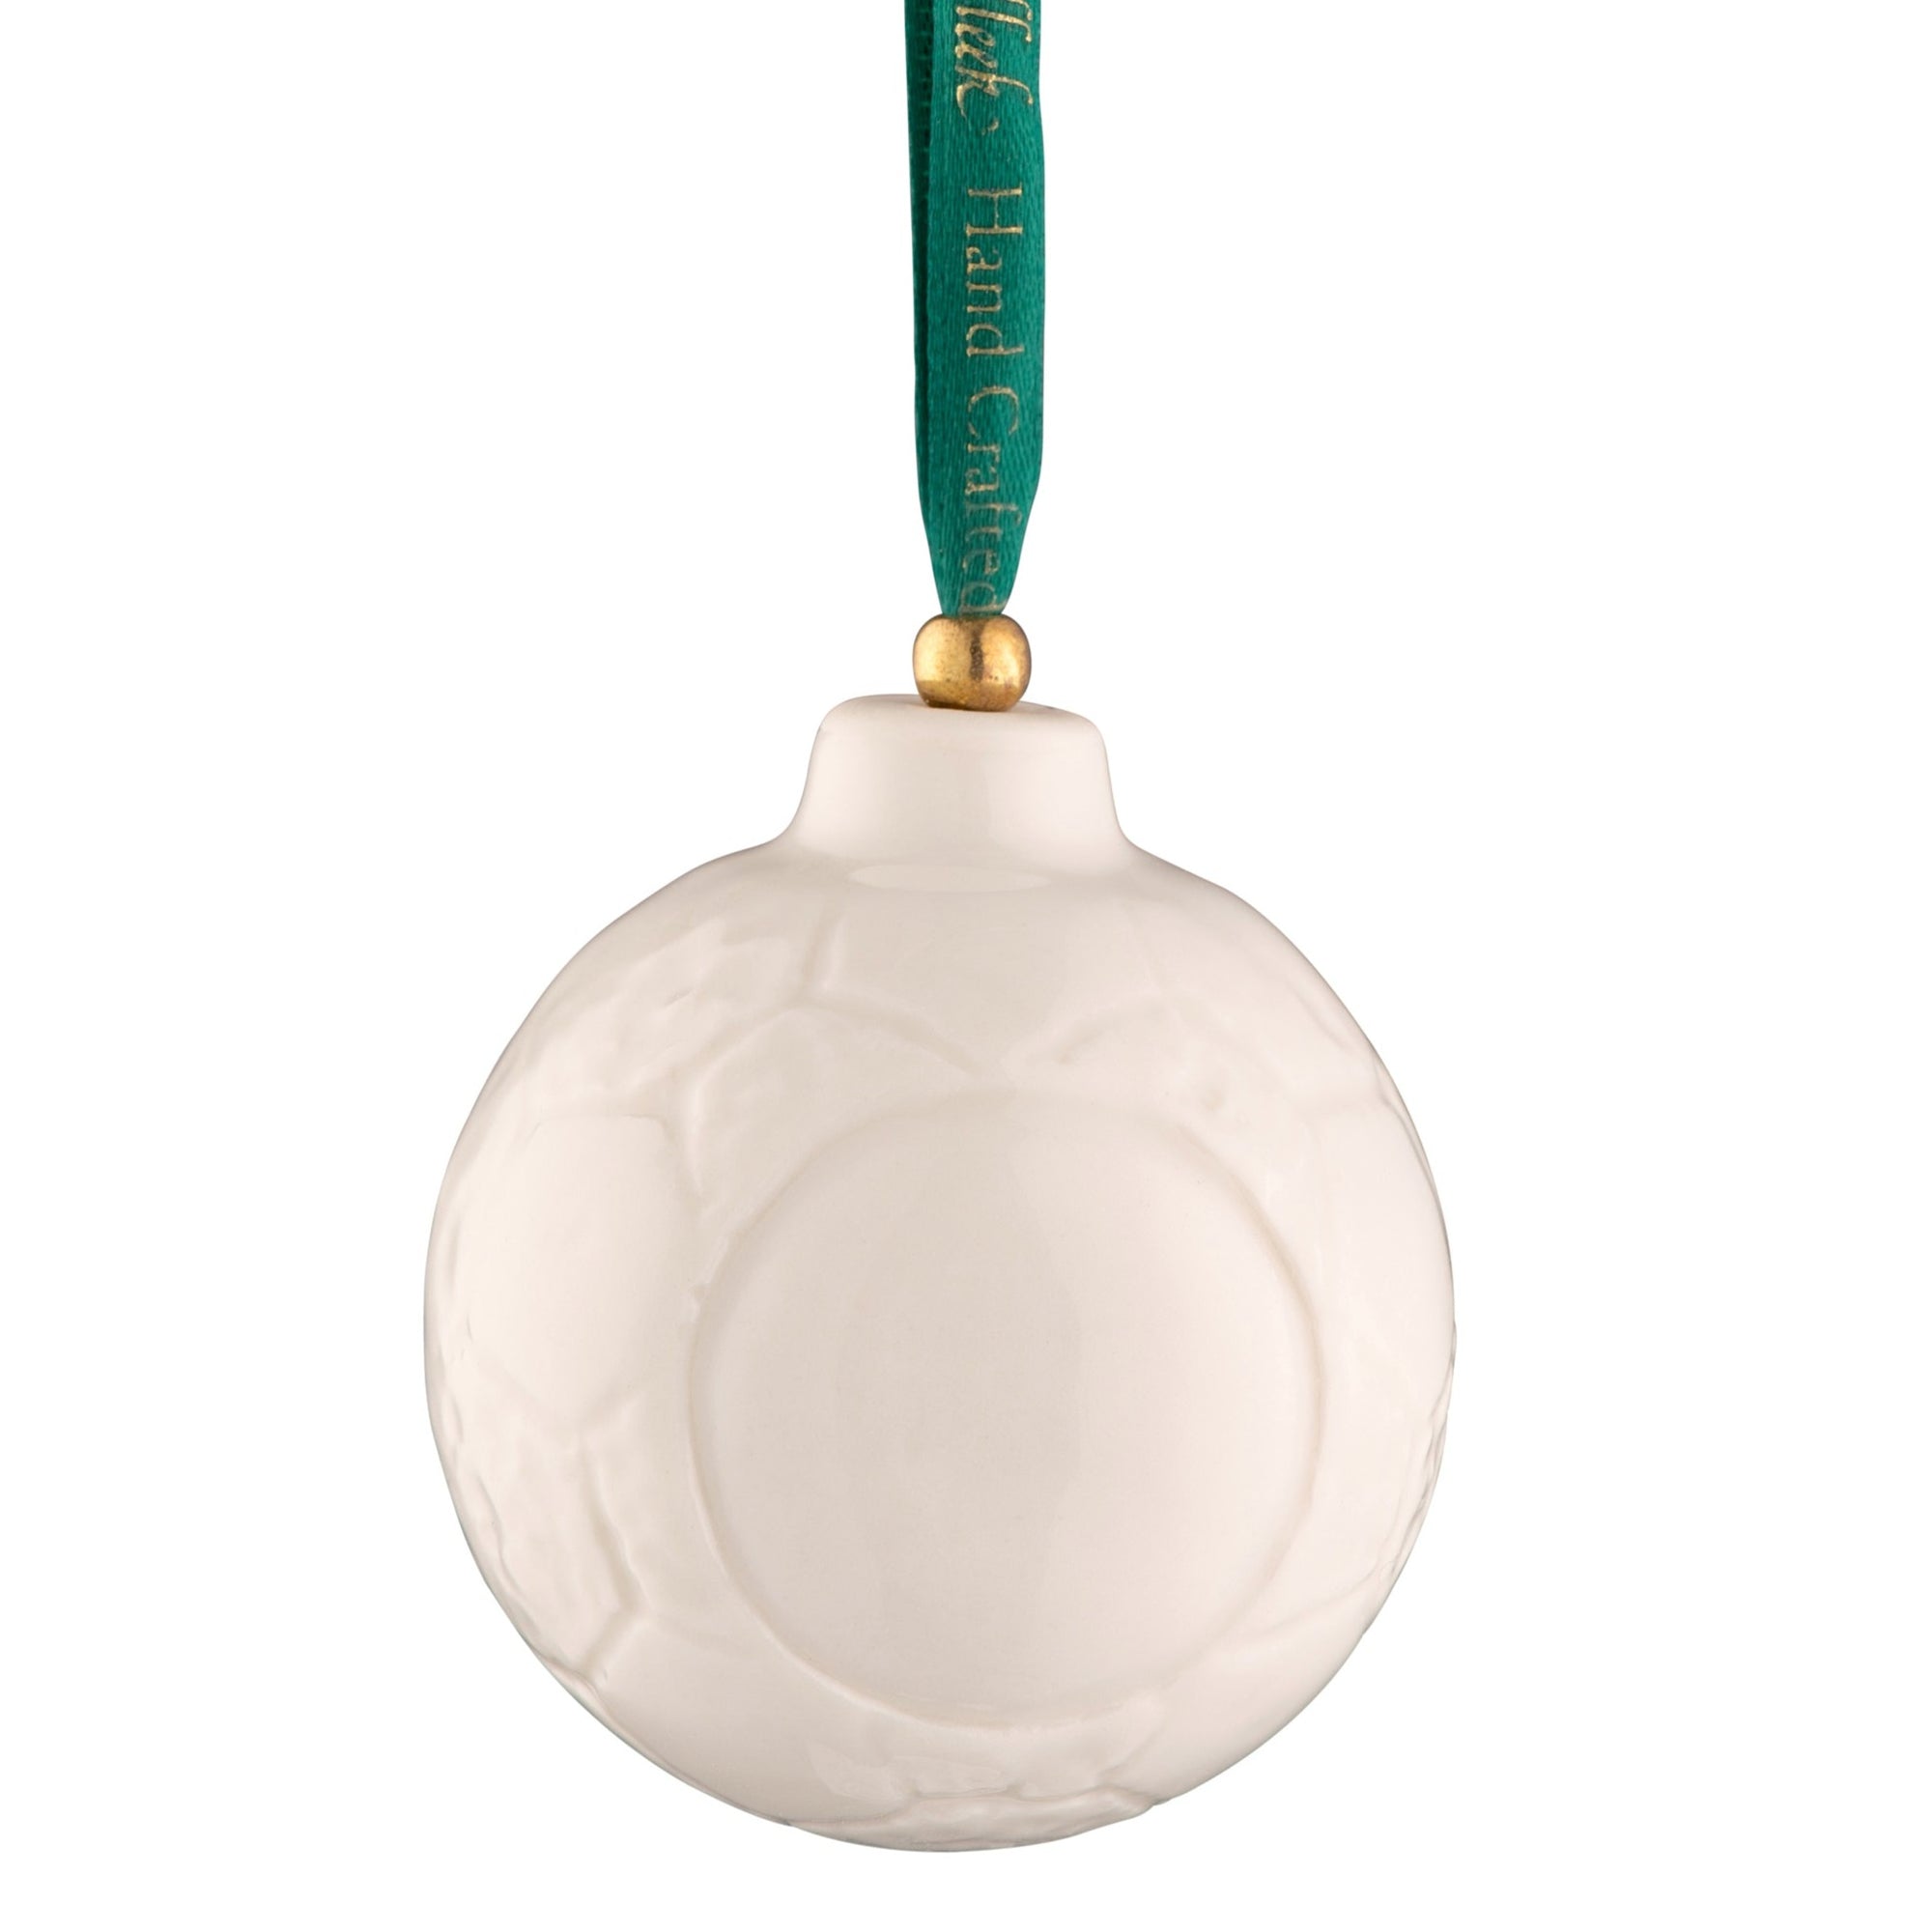 Belleek Classic Soccer Ball Ornament: 4737